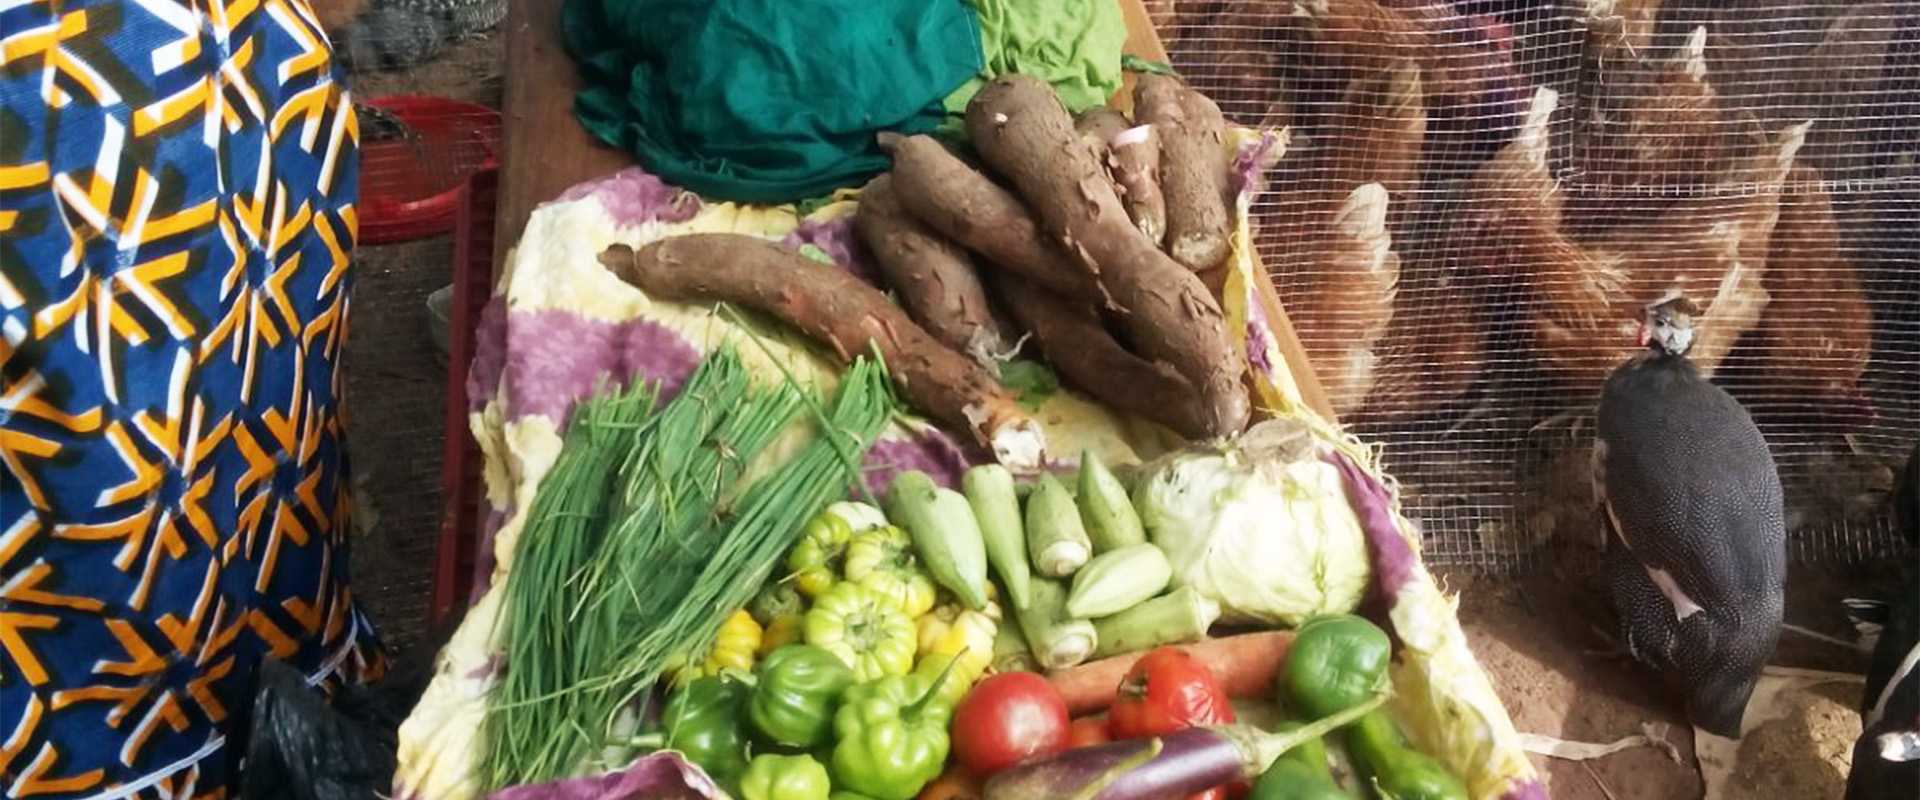 verdure polli fiera avicoltura Guinea Bissau Mani Tese 2018